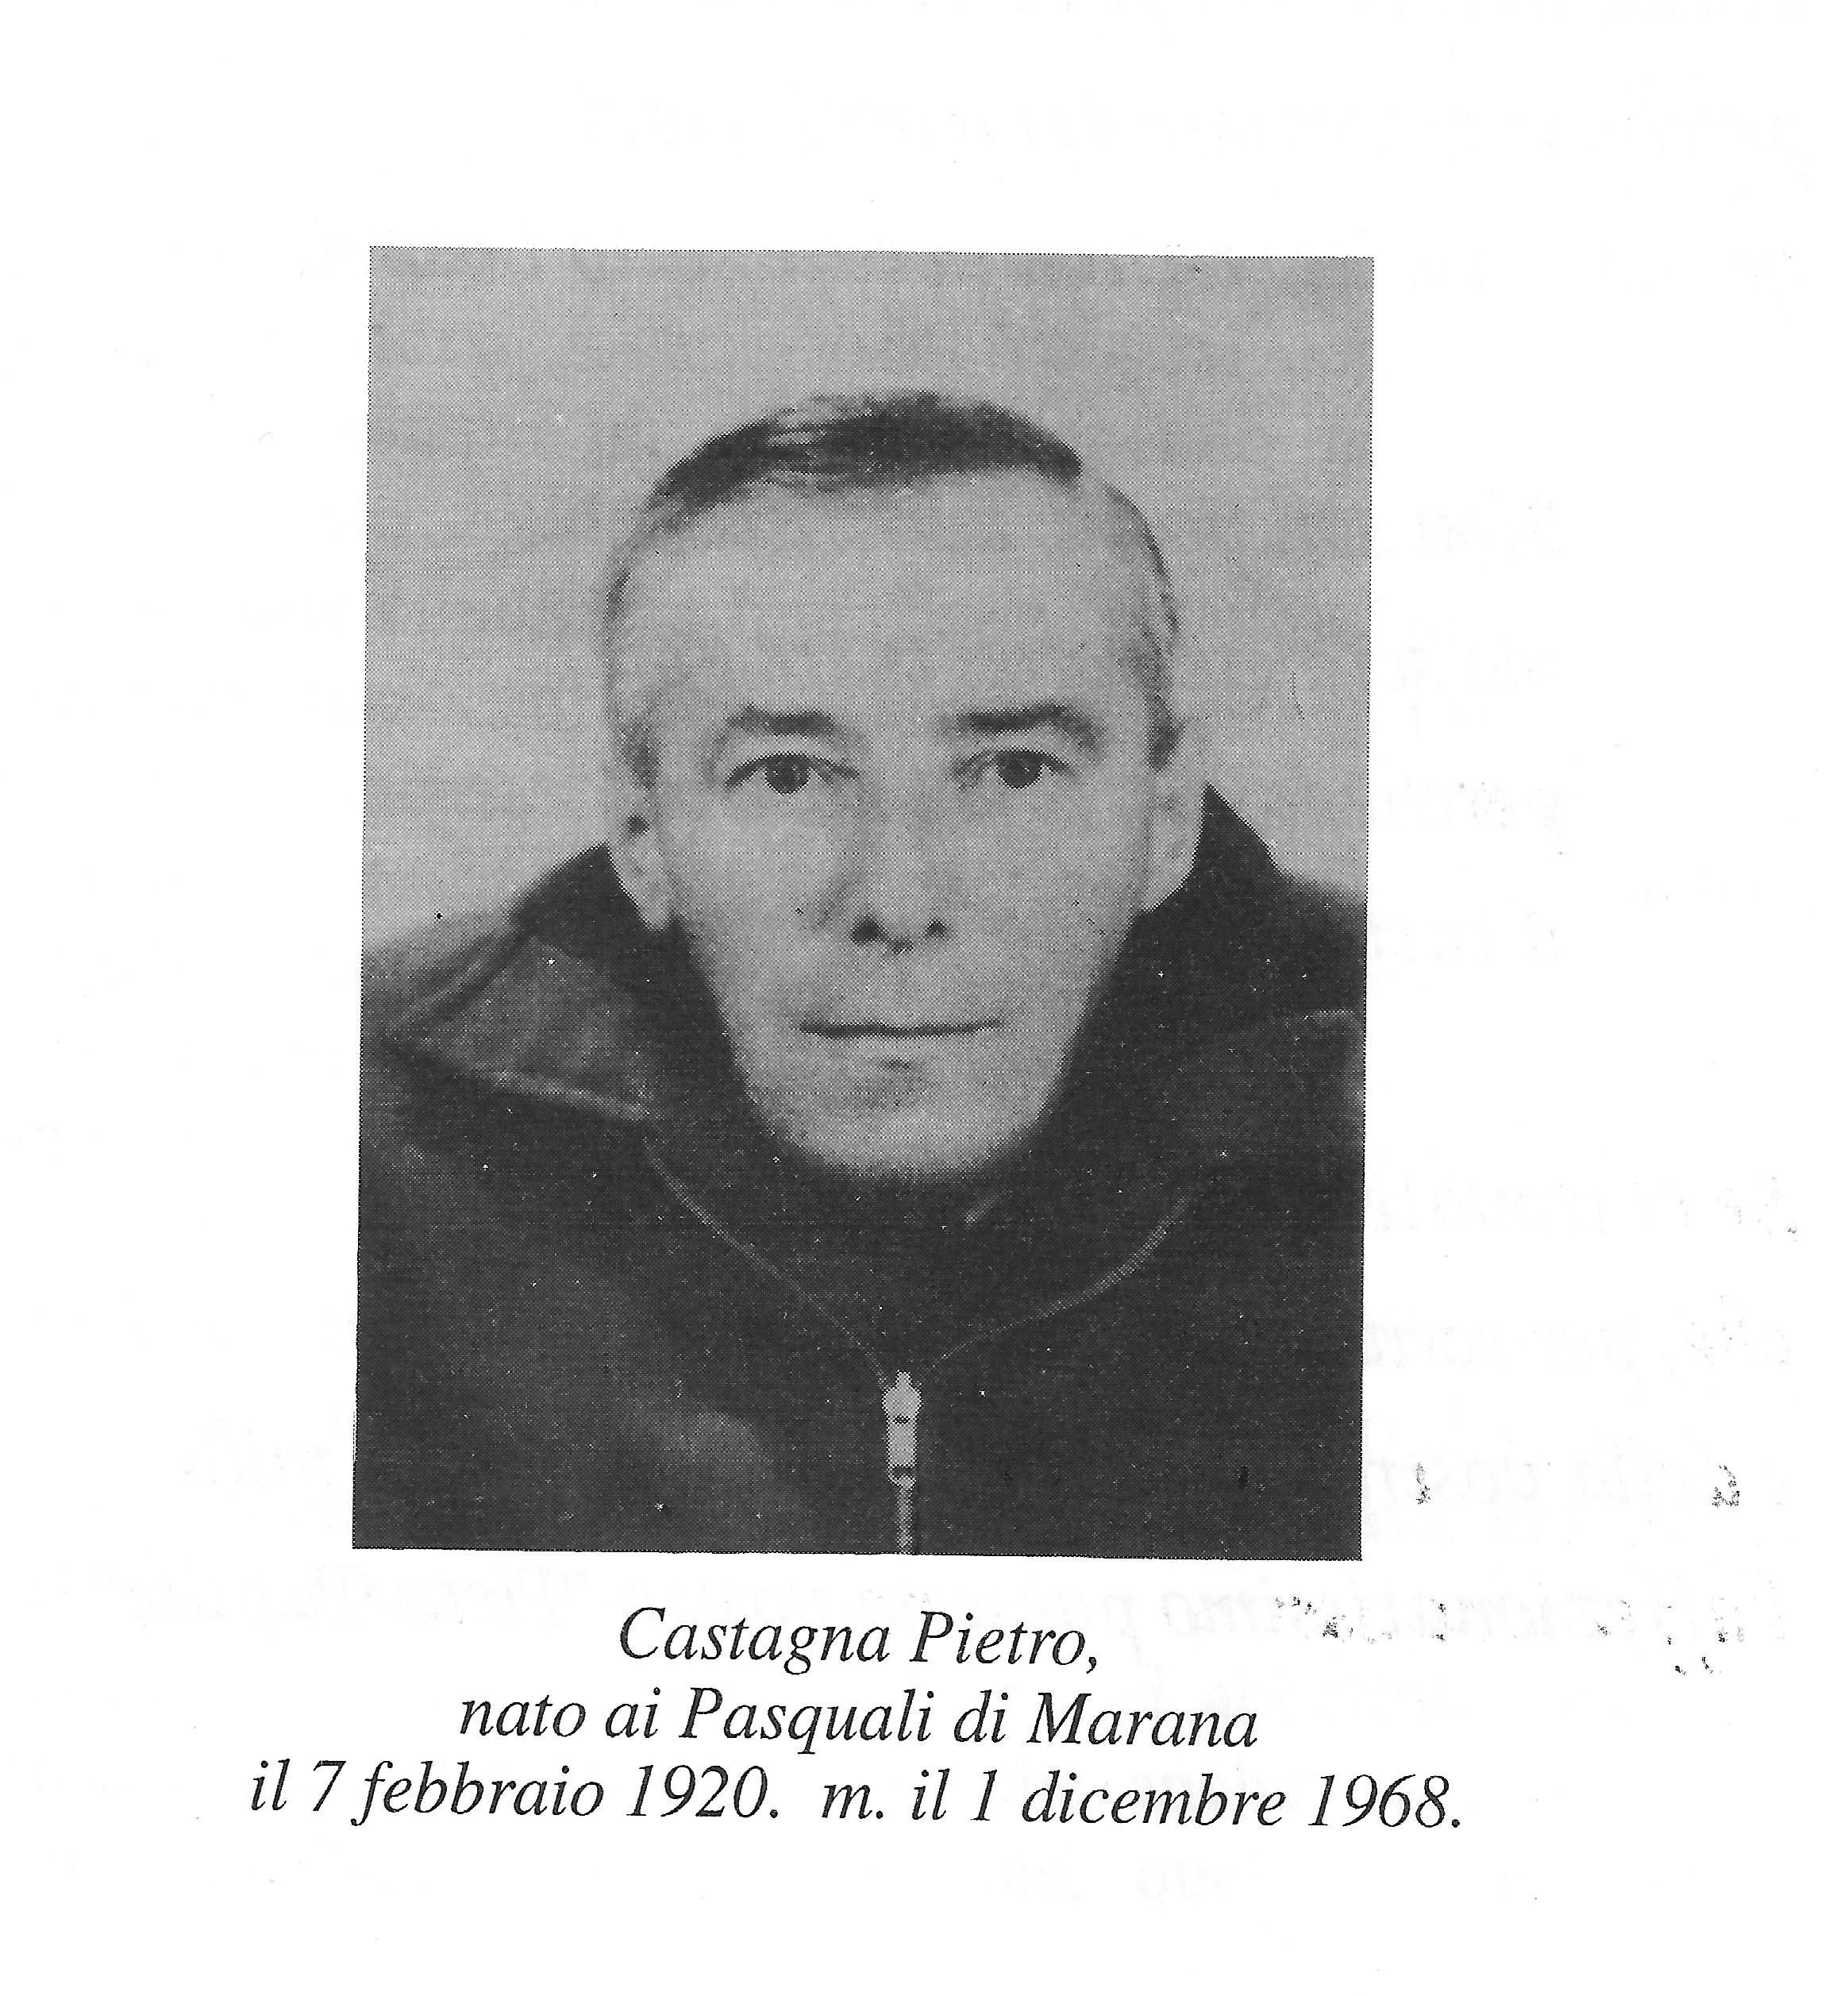 Castagna Pietro